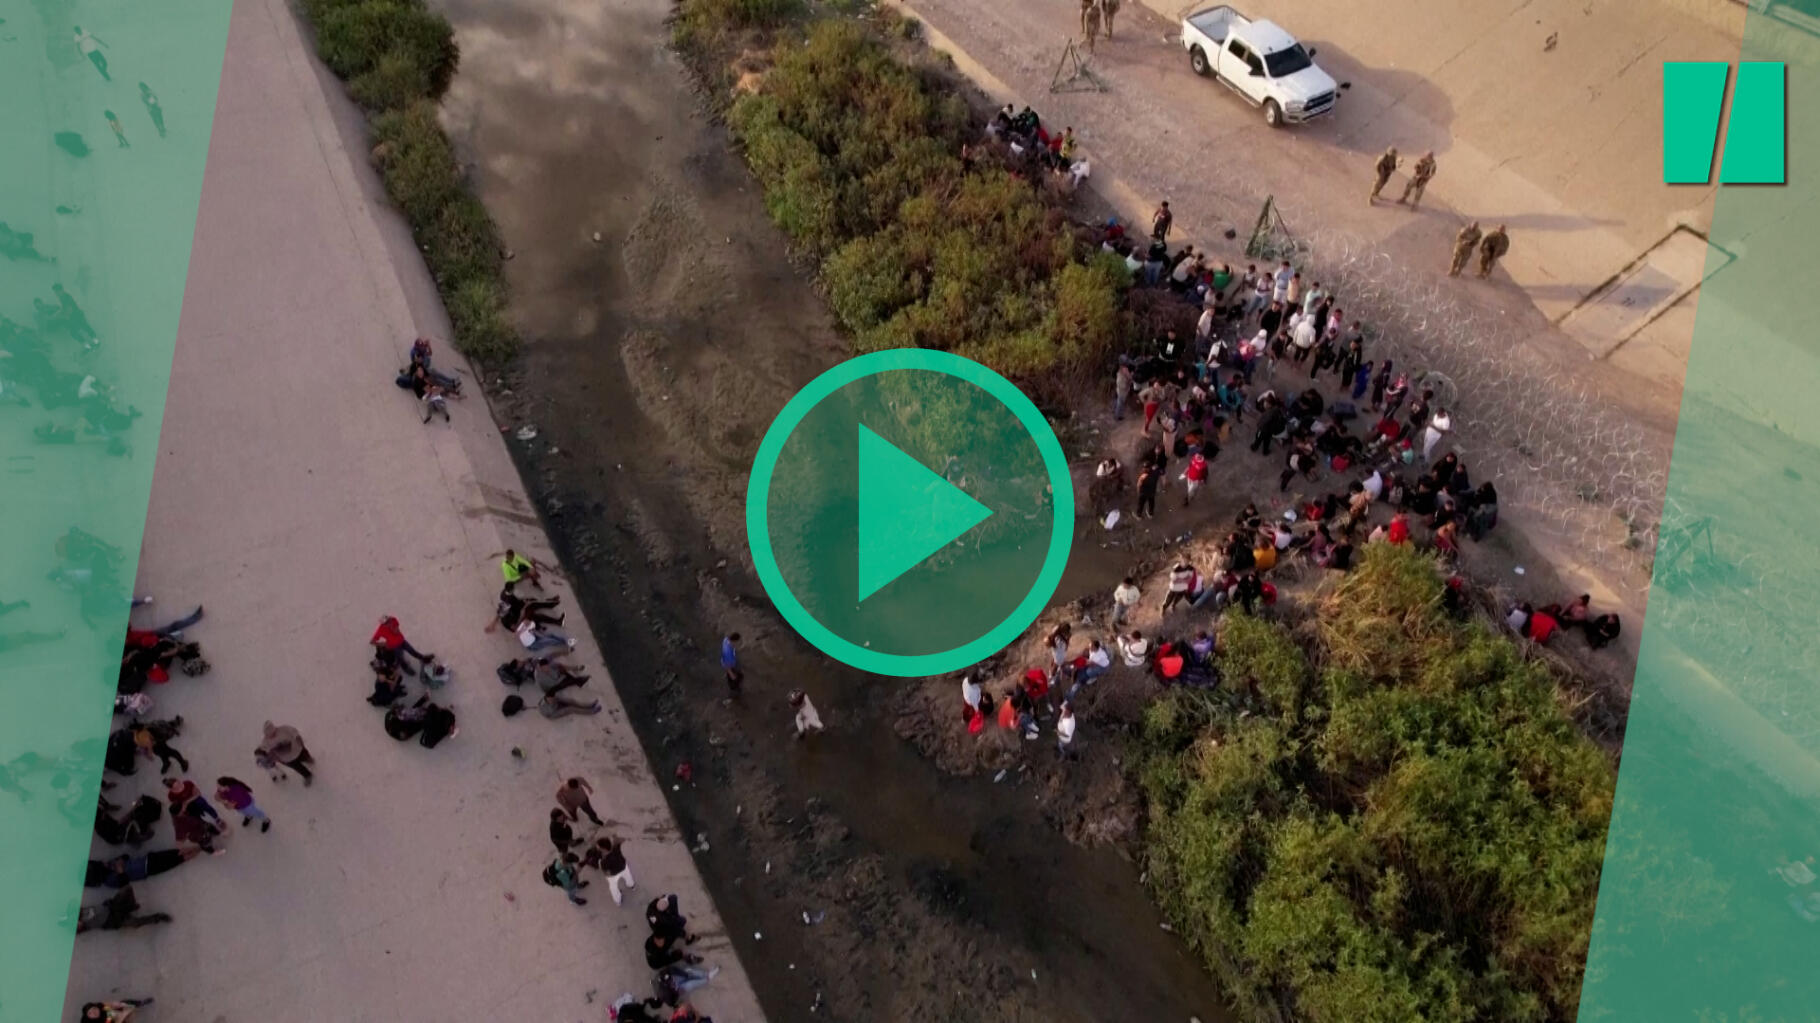 La ville d’El Paso au bord « de la rupture » alerte son maire face à l’afflux de migrants